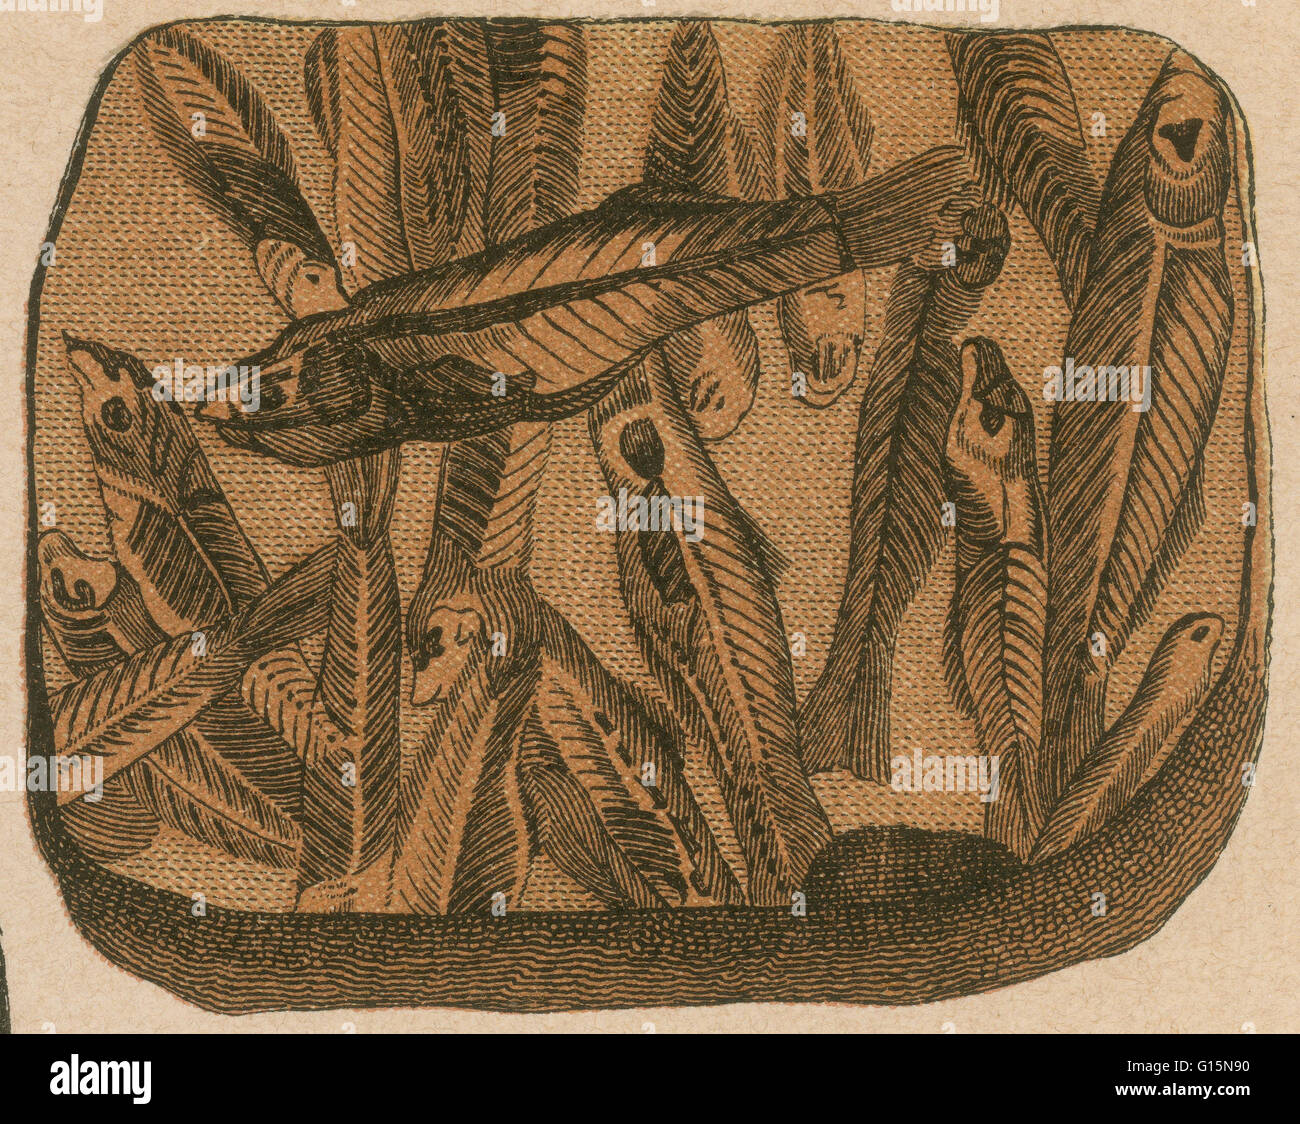 Pesce preistorico, Lebias cephalotes. Litografia di stampa da una rara opera di G.H.Schubert intitolato, illustrata la geologia e paleontologia, 1886. Questa serie è stata pubblicata dal 1896 ed è un grande lavoro sui fossili di dinosauro. Foto Stock